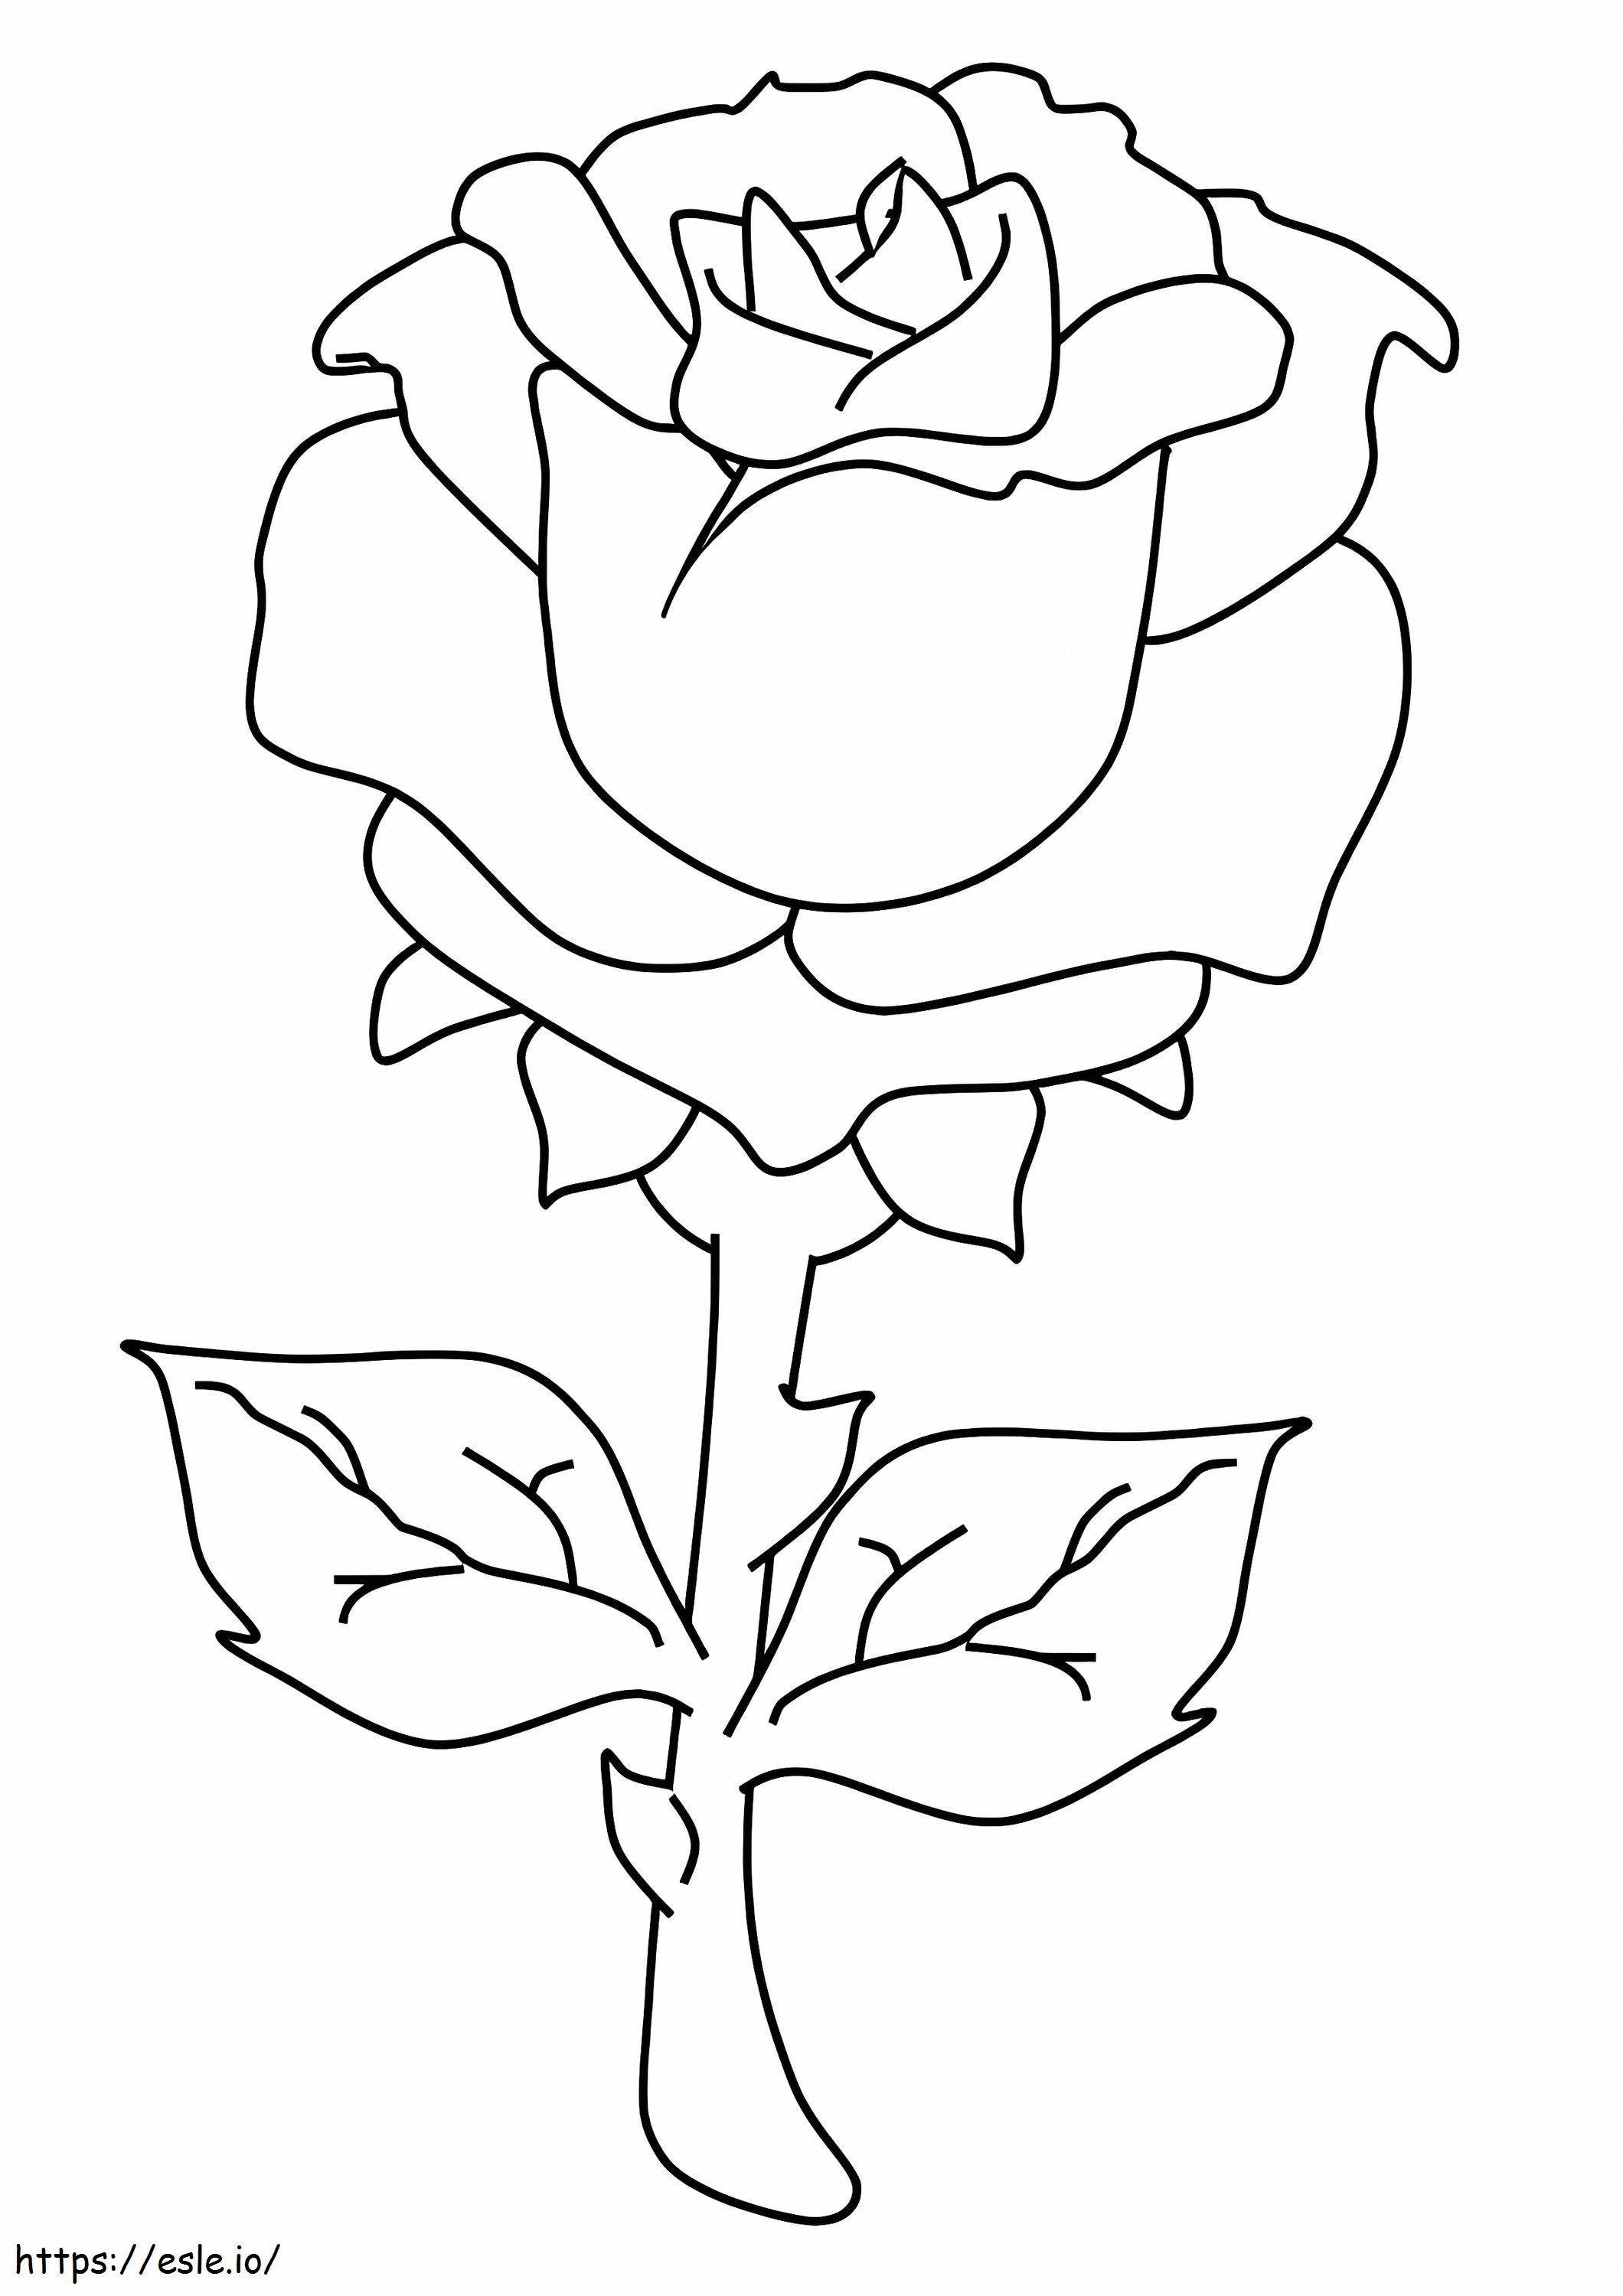  Schöne Rose A4 ausmalbilder